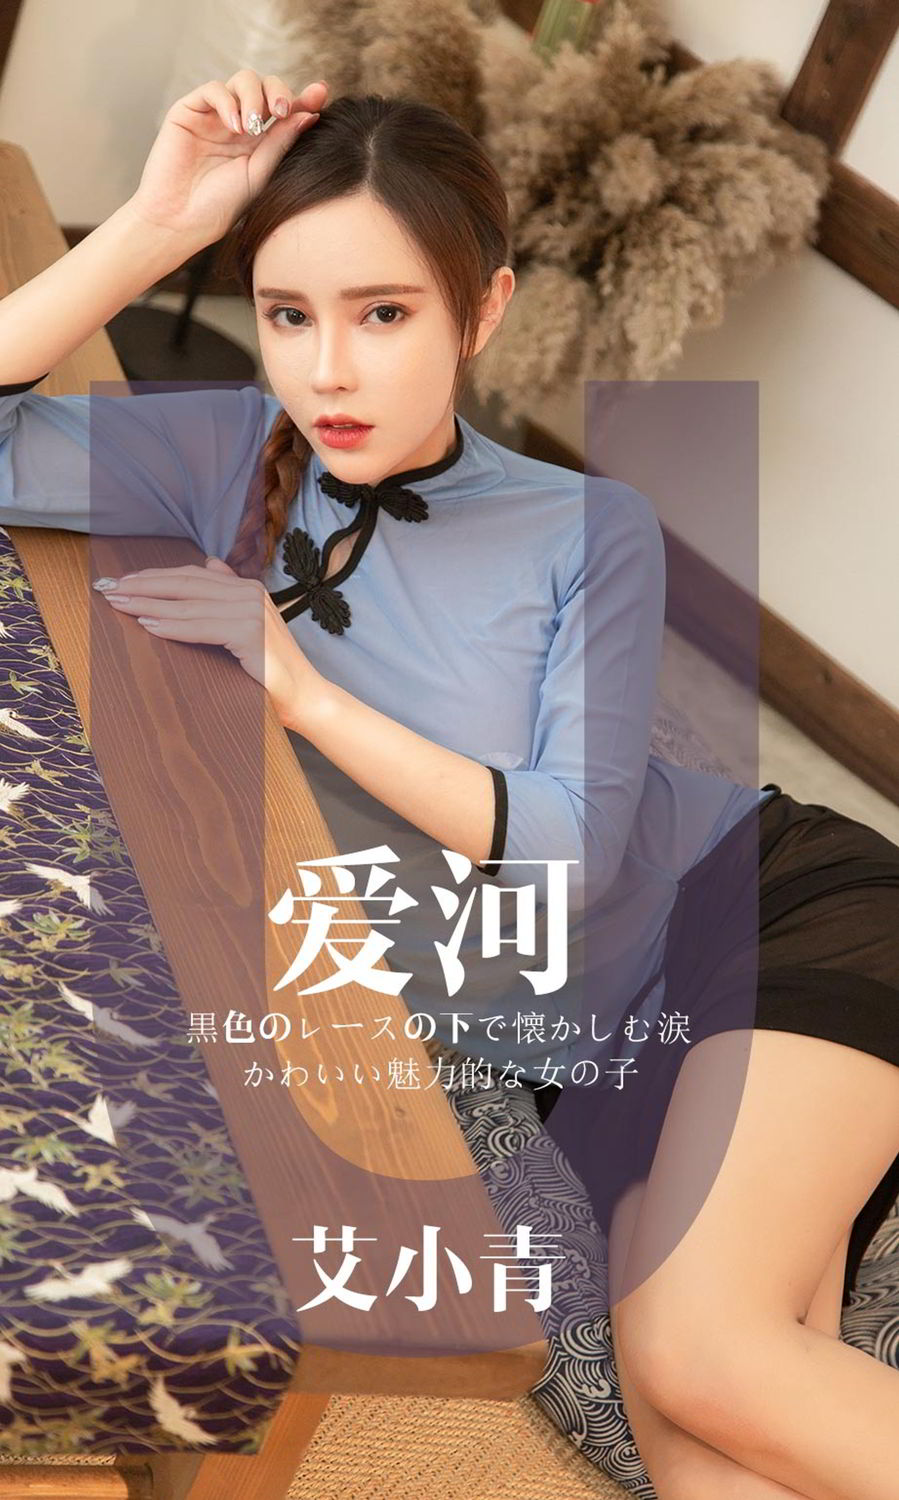 Ugirls App Vol. 1444 Xiaoqing Ai